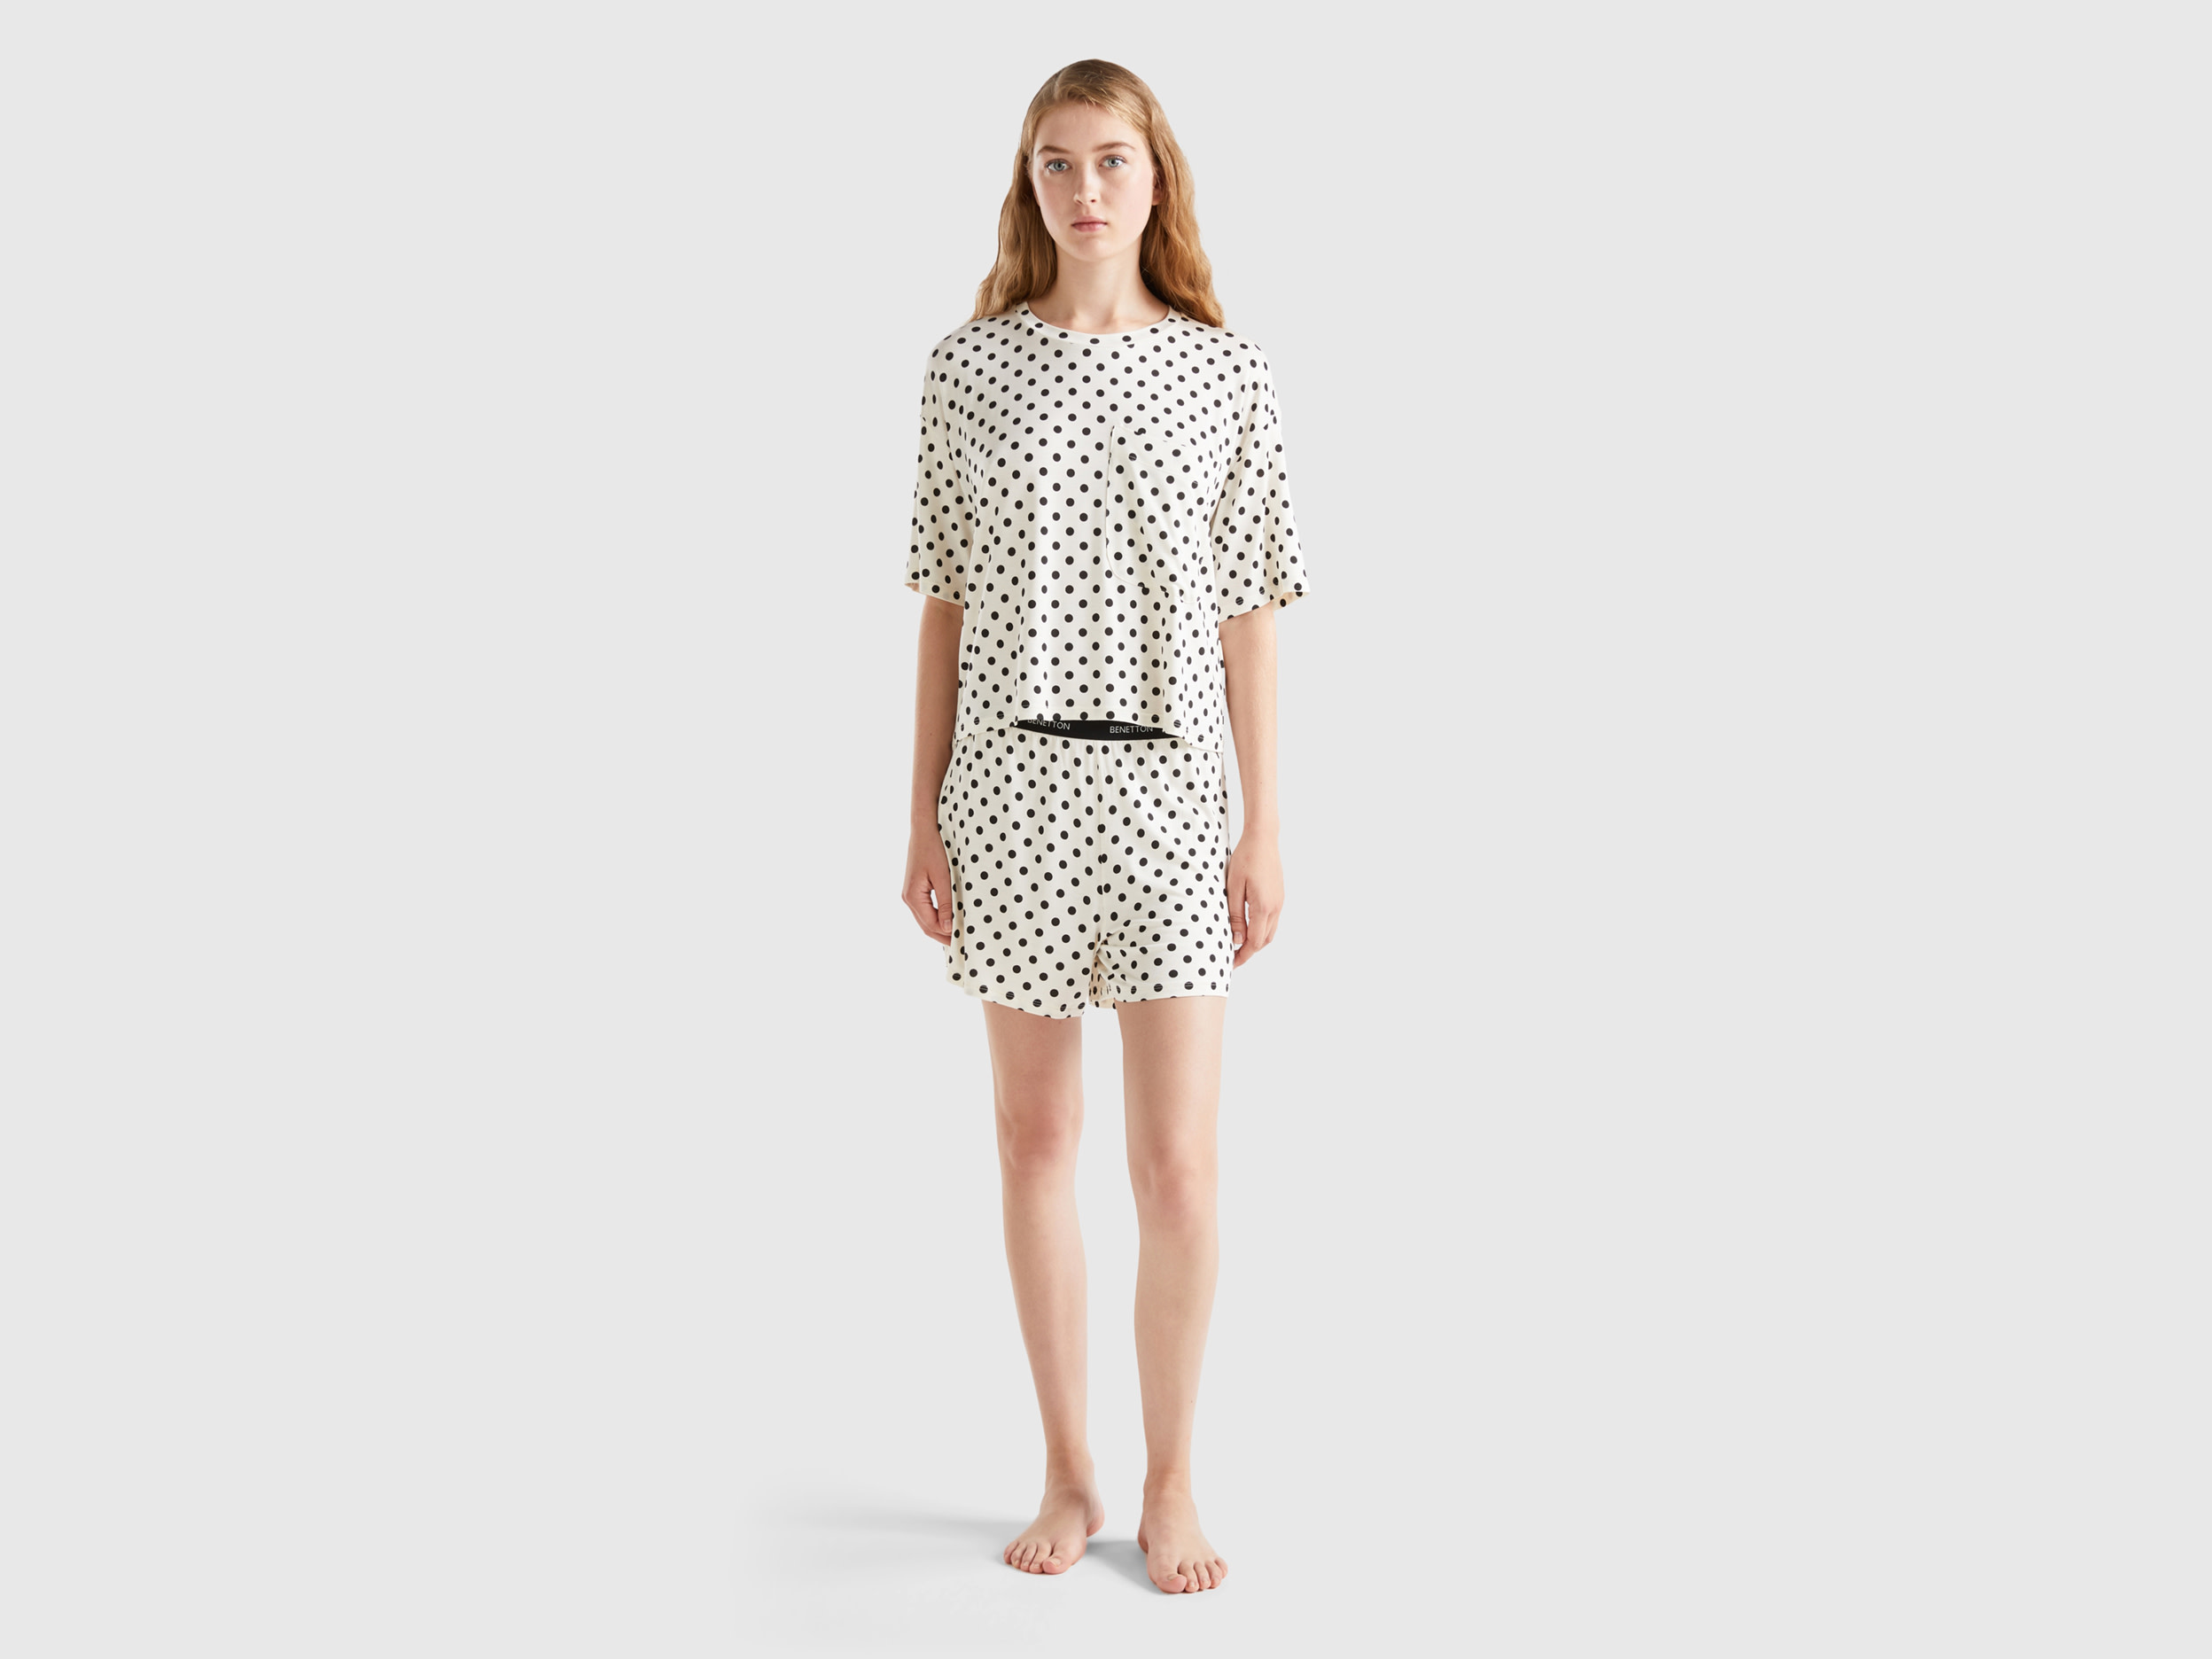 Benetton, Pyjamas With Polka Dot Shorts, size S, Creamy White, Women